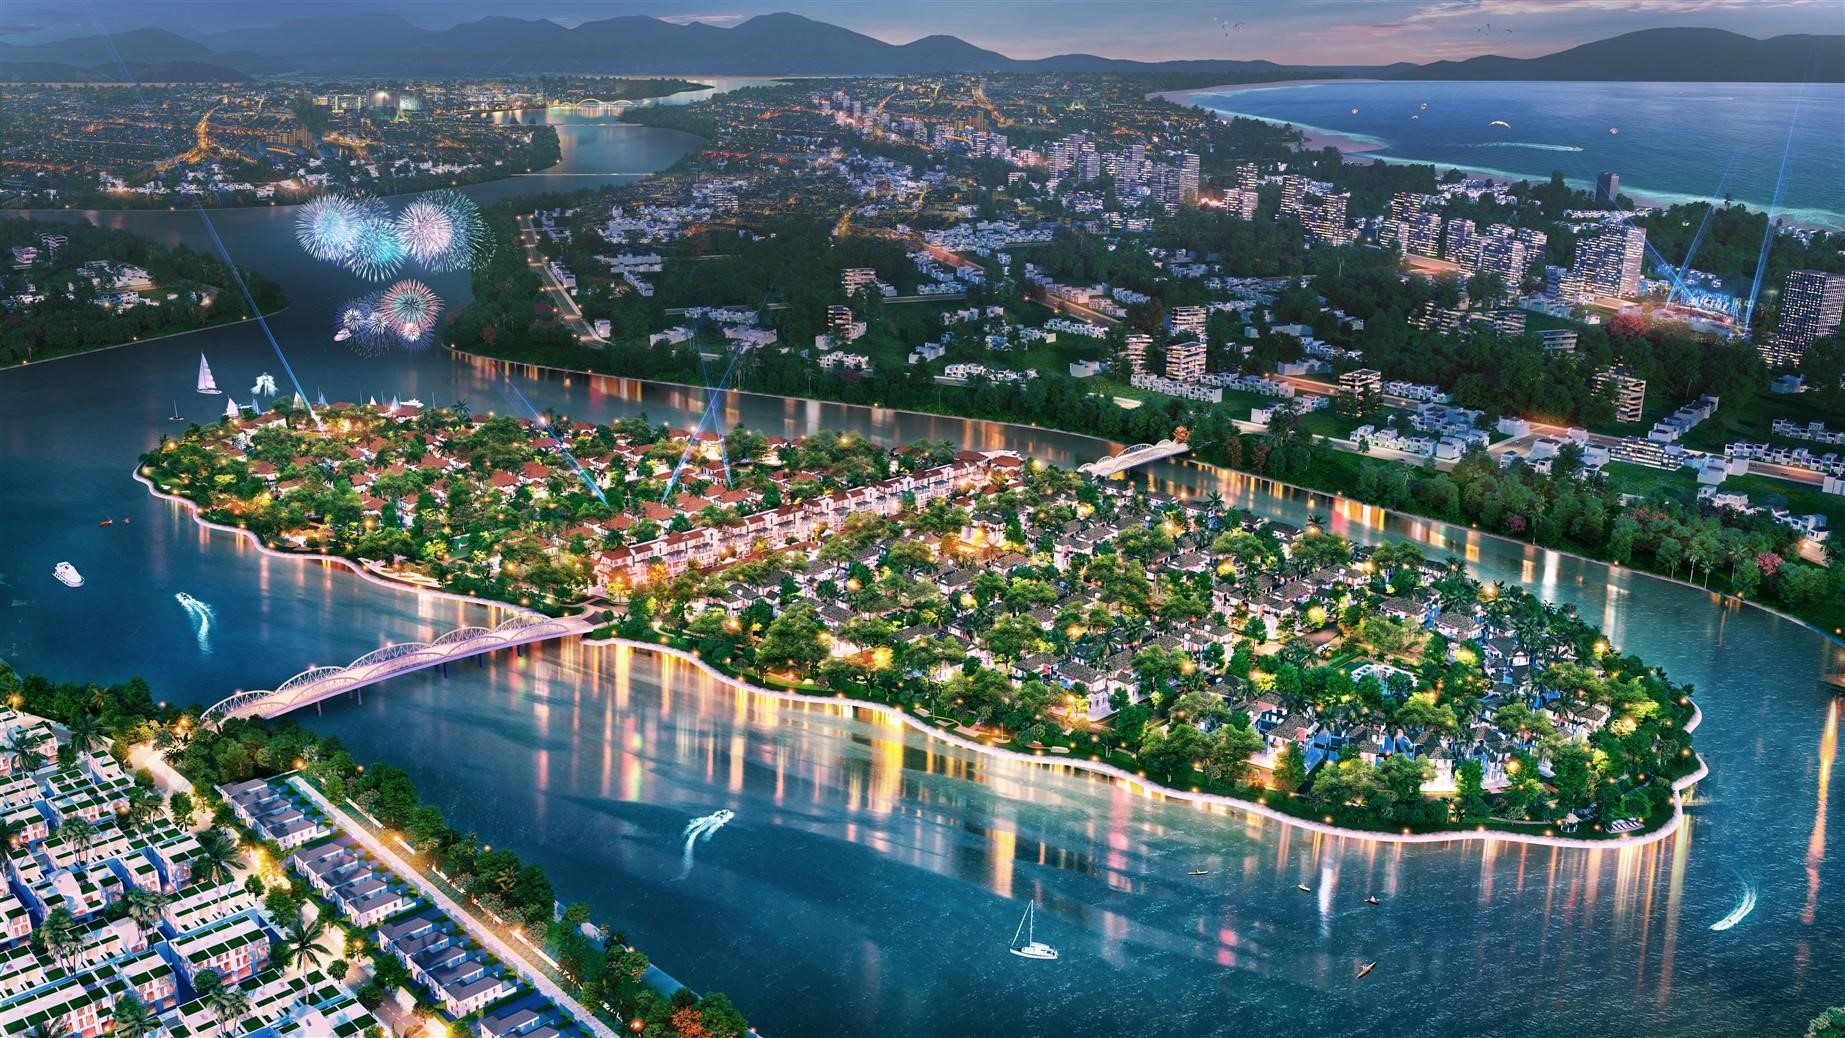 Sau quần thể thành phố hội nhập, Sun Property sẽ có siêu phẩm mới nào ở Đà Nẵng?